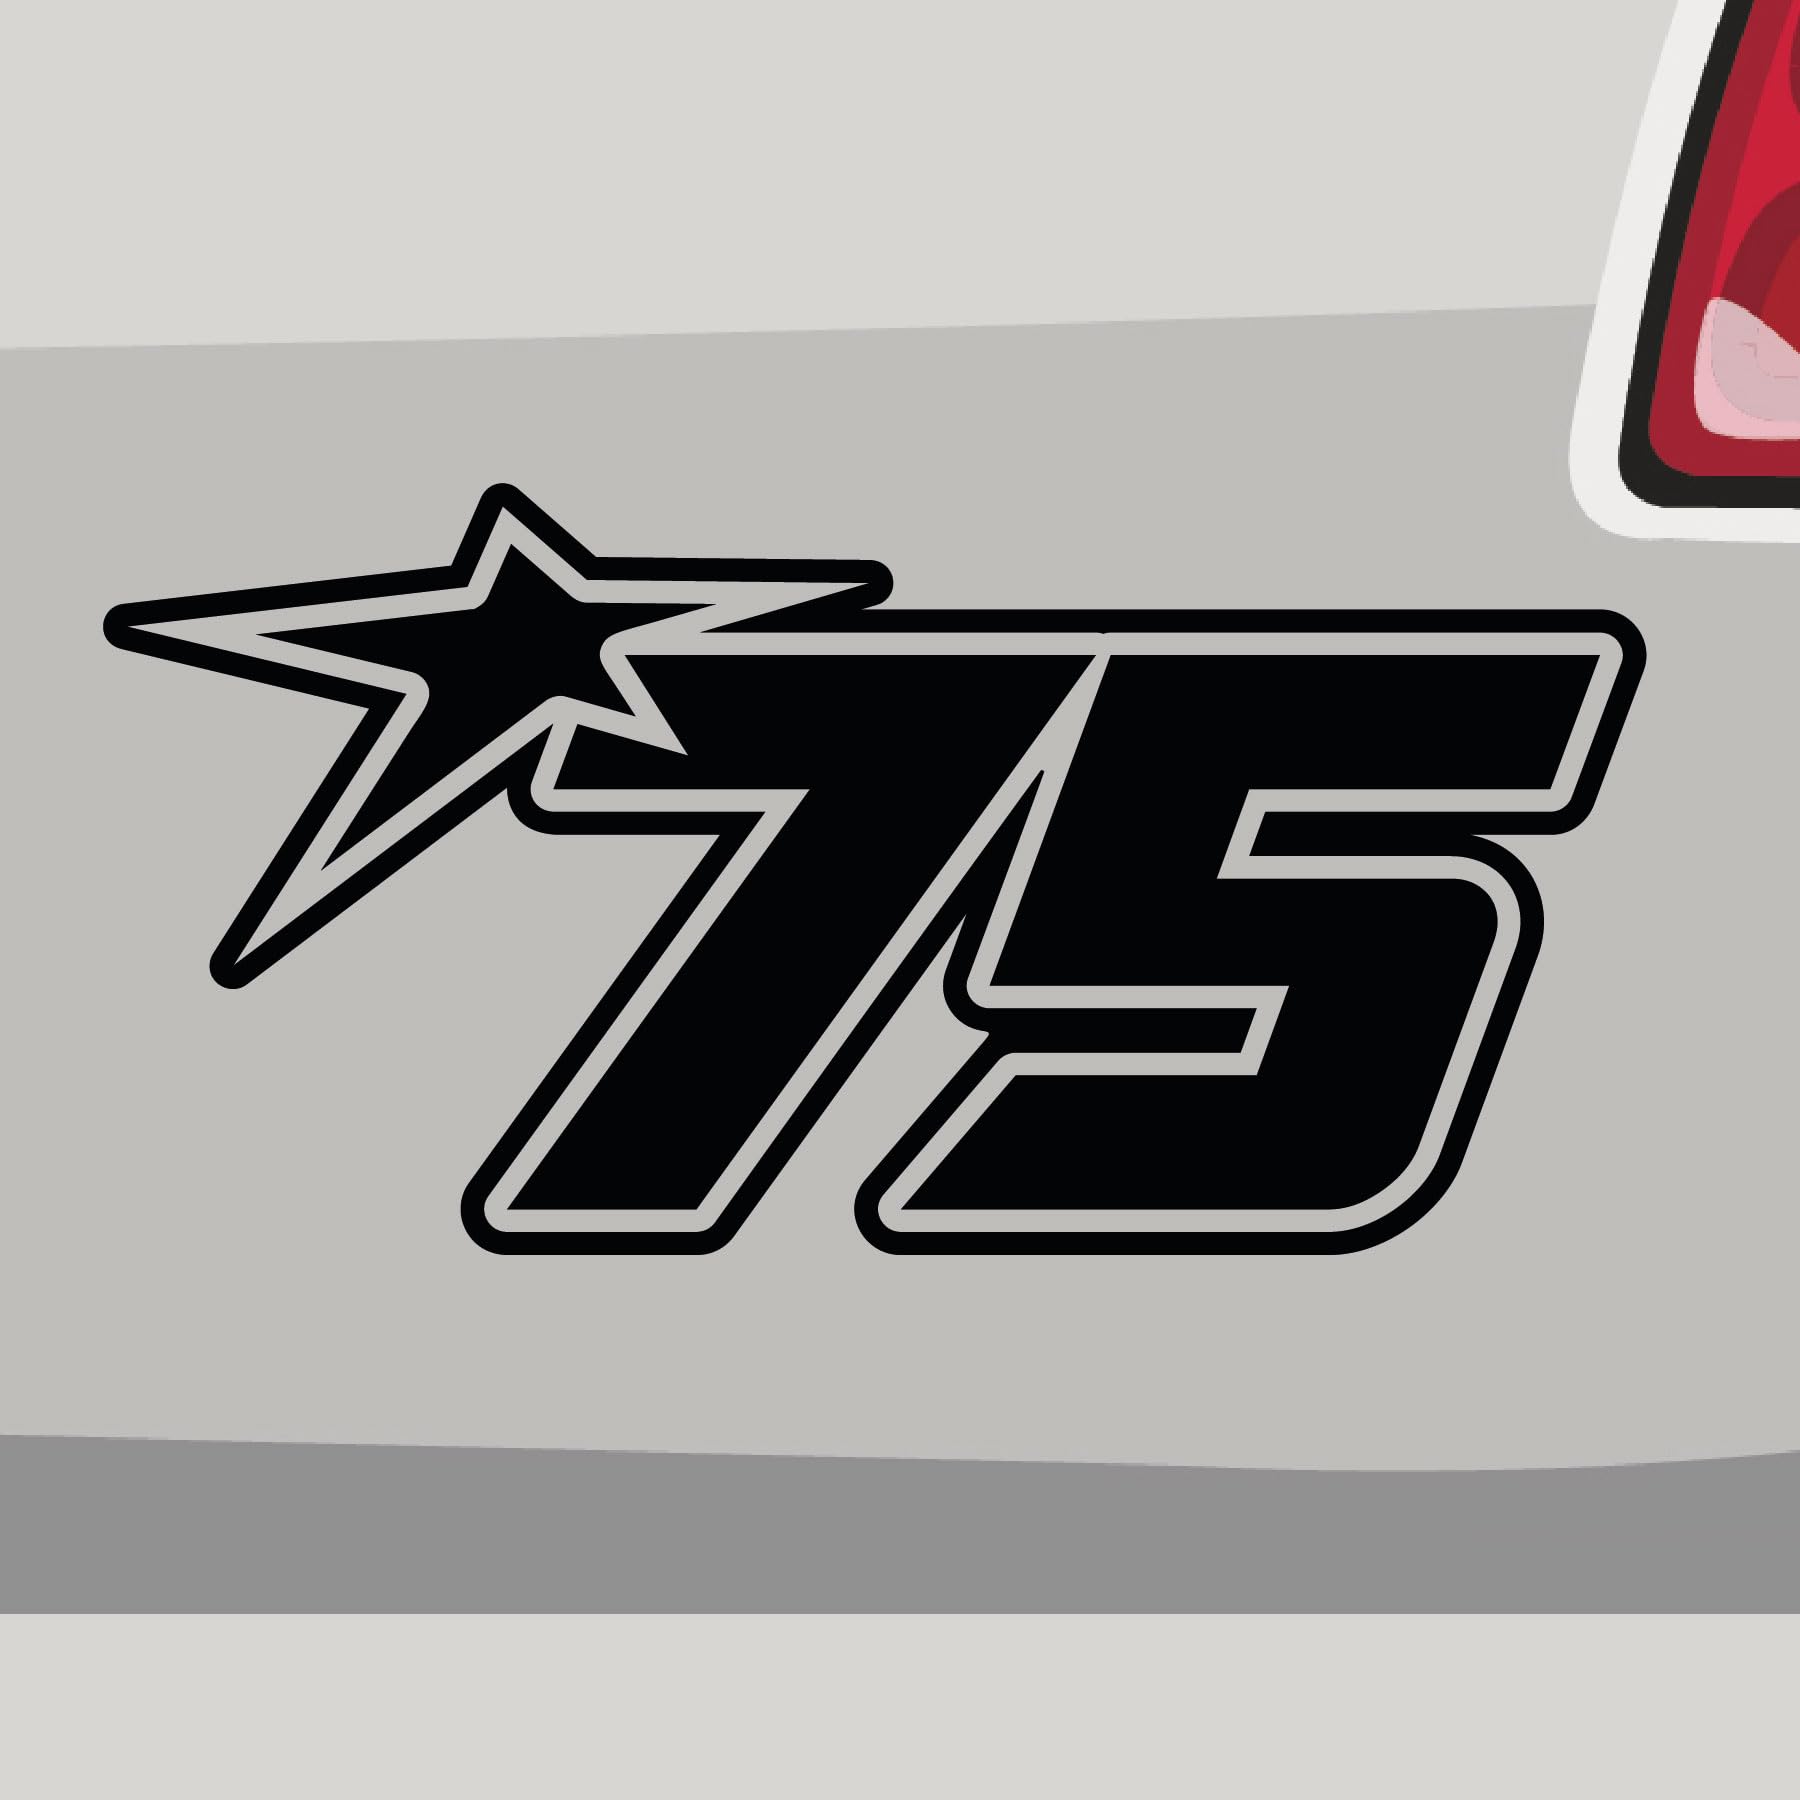 Stickerfreaks Startnummer 75 Aufkleber Race Sticker Star Number Stern Auto Bike Decal Vinyl Aufkleber Größe: 29x14,5cm (XL) | Farbe: 66-türkisblau | Race Sticker Kleber Deko Tuning Startnummer von Stickerfreaks